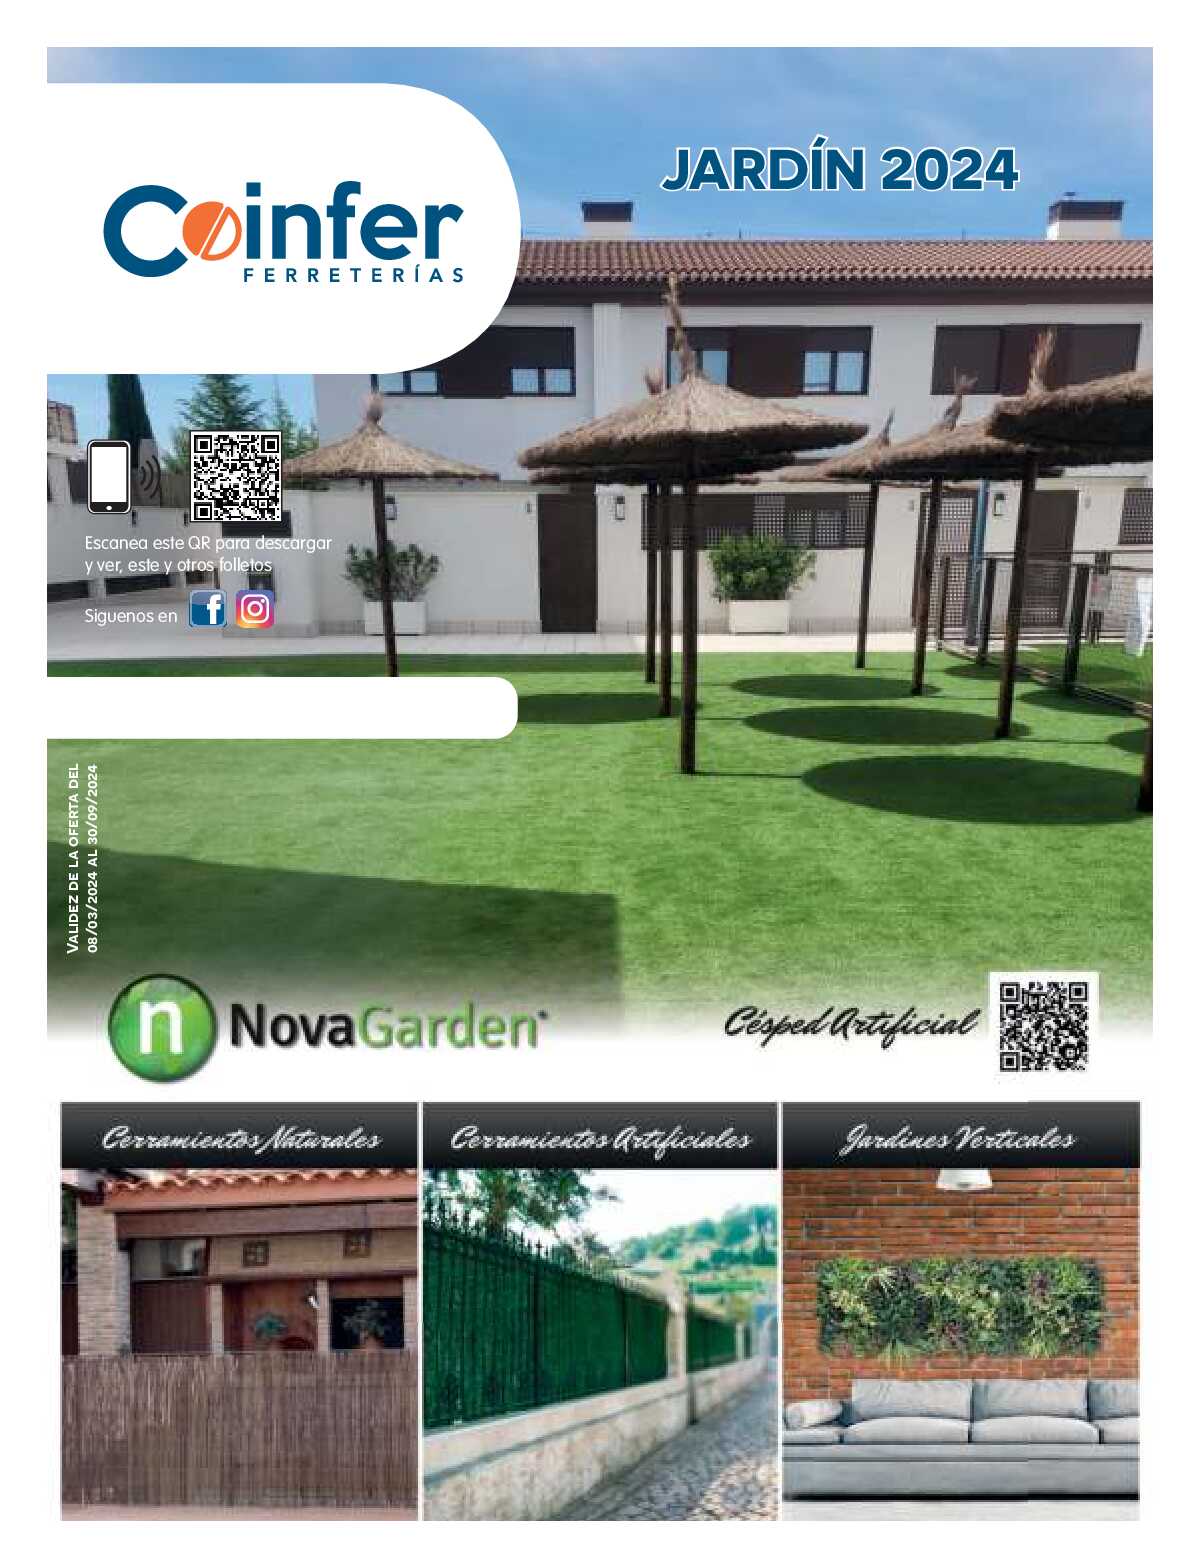 Jardín 2024 Coinfer. Página 01